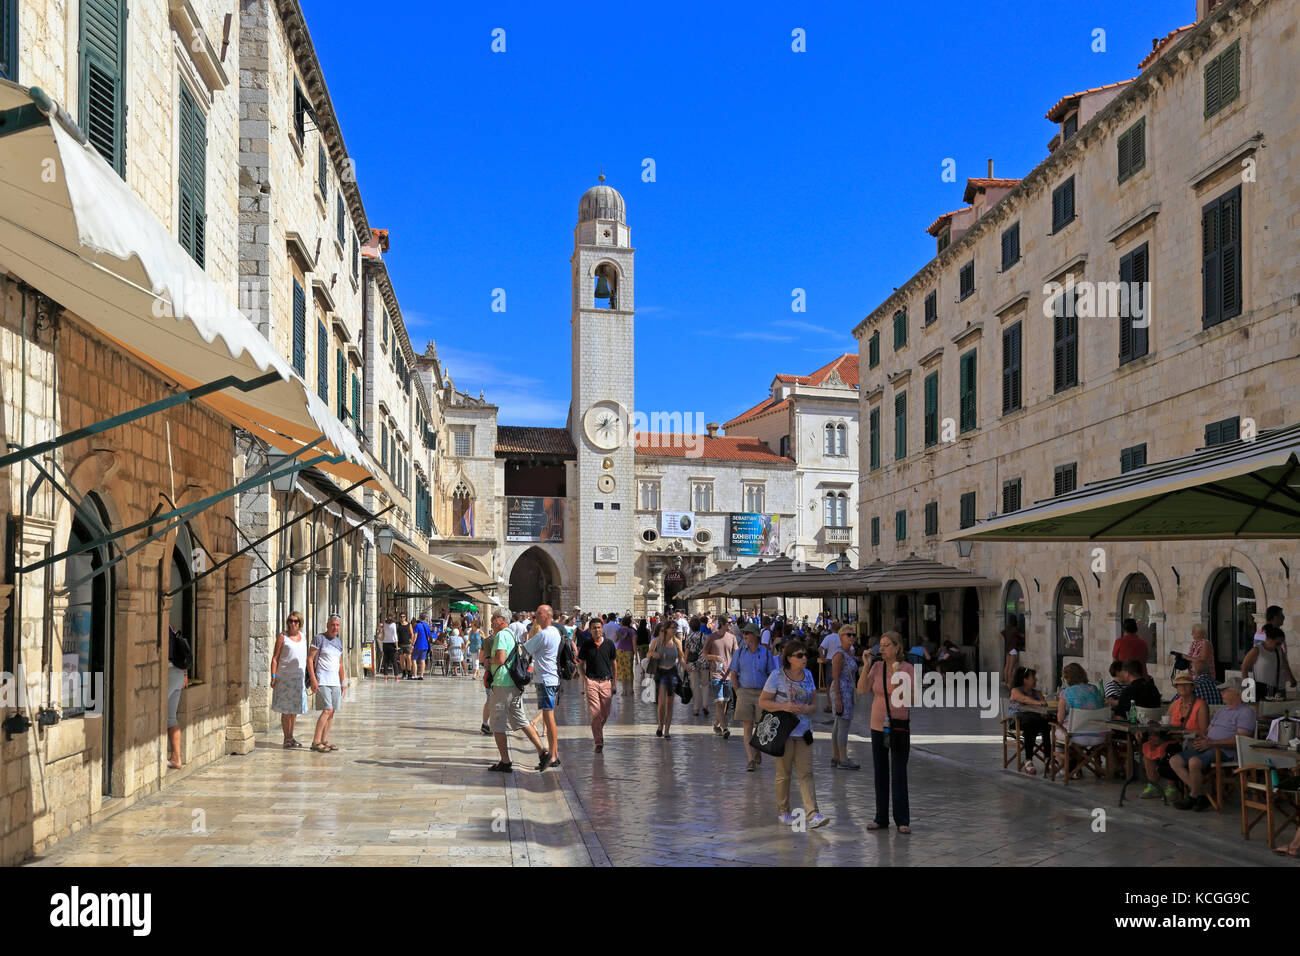 La rue principale Stradun et tour de l'horloge en place Luza, vieille ville de Dubrovnik, Croatie, UNESCO World Heritage site, Dalmatie, côte dalmate, l'Europe. Banque D'Images